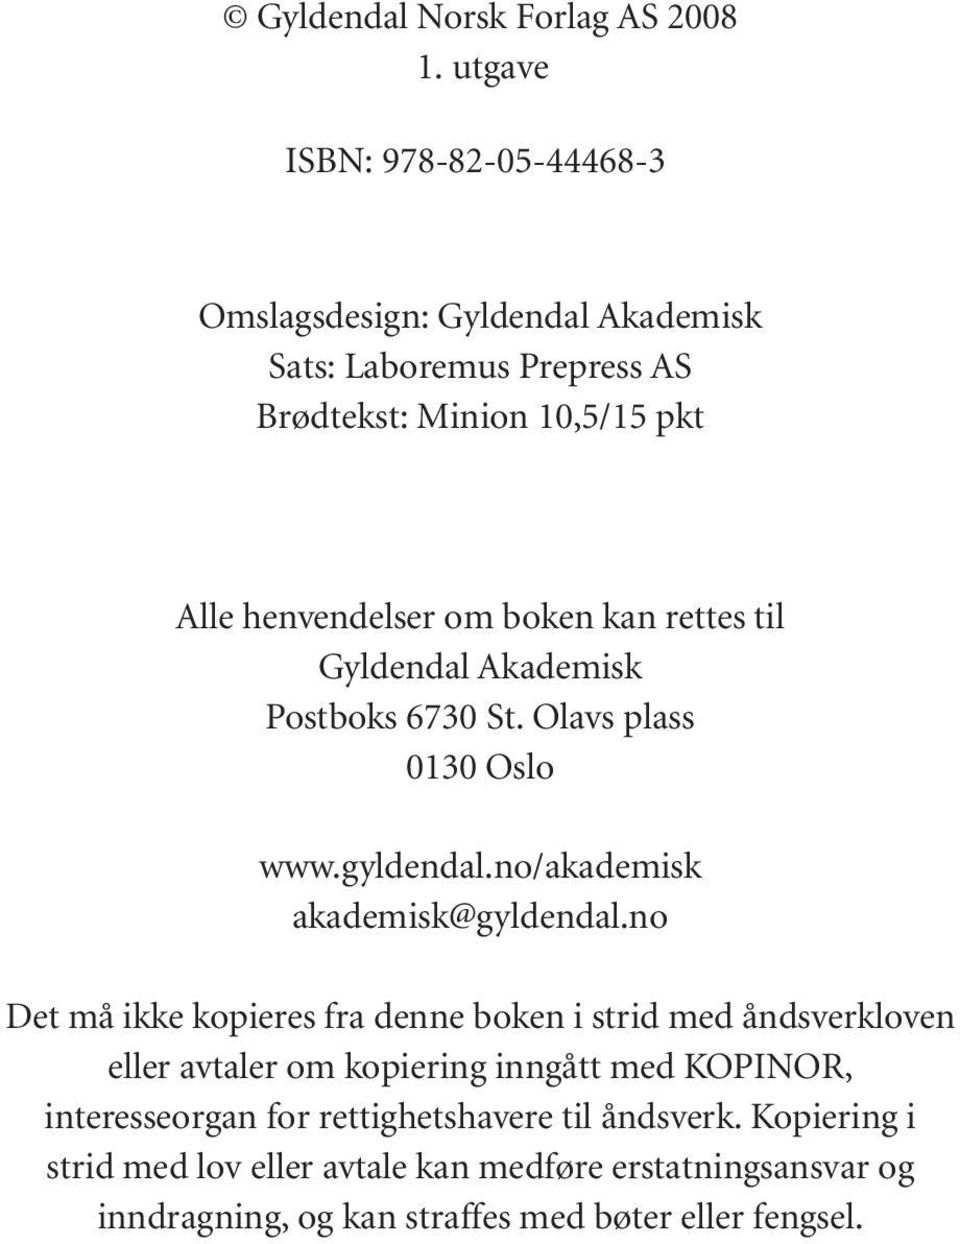 boken kan rettes til Gyldendal Akademisk Postboks 6730 St. Olavs plass 0130 Oslo www.gyldendal.no/akademisk akademisk@gyldendal.